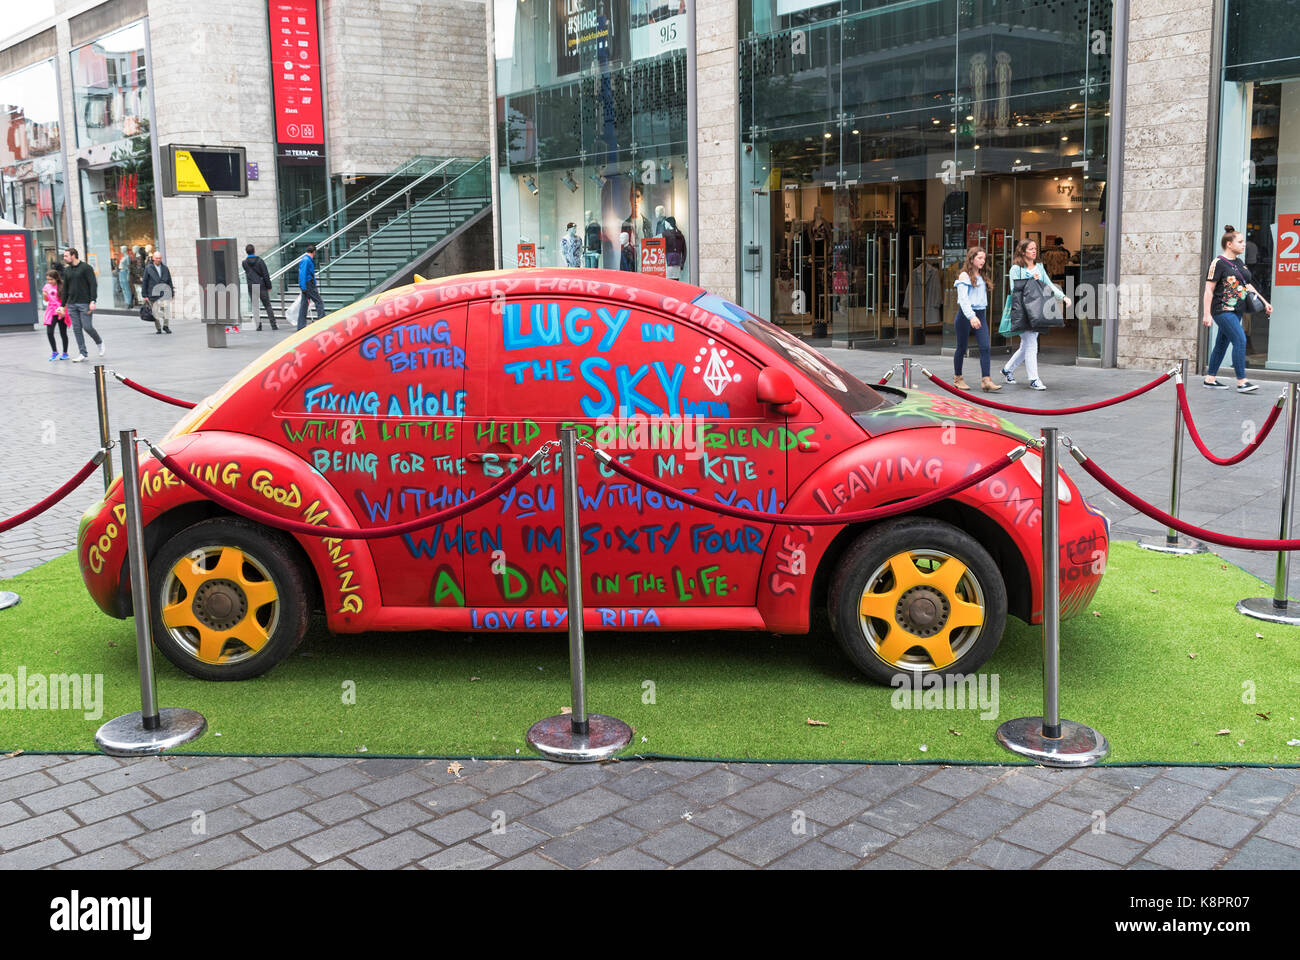 Summer of love bugs à Liverpool, Angleterre, Royaume-Uni, VW Coccinelle peinte pour fêter les 50 ans de l'été de l'amour et la libération des Beatles, sgt peppe Banque D'Images